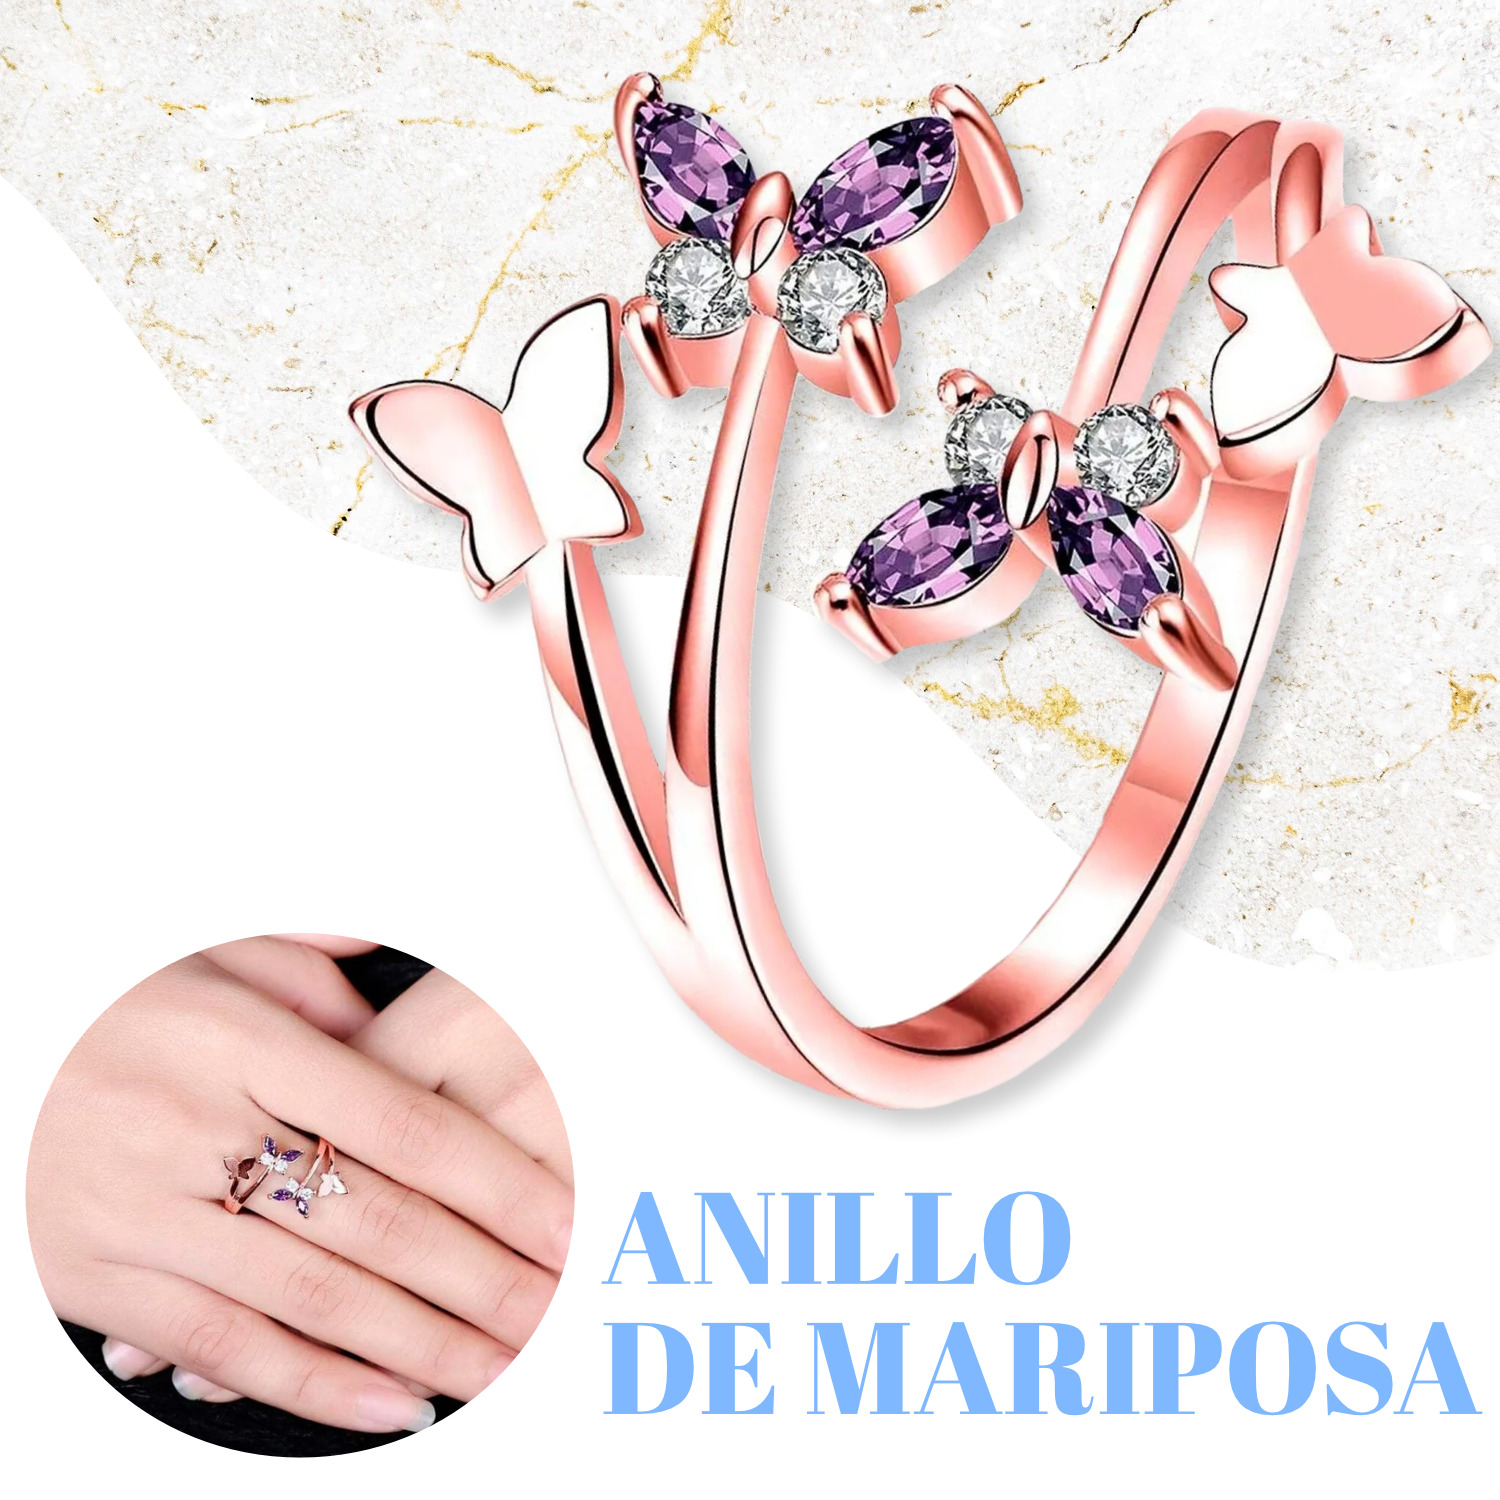 Anillo De Mariposa Zirconias Moradas Ajustable Calidad